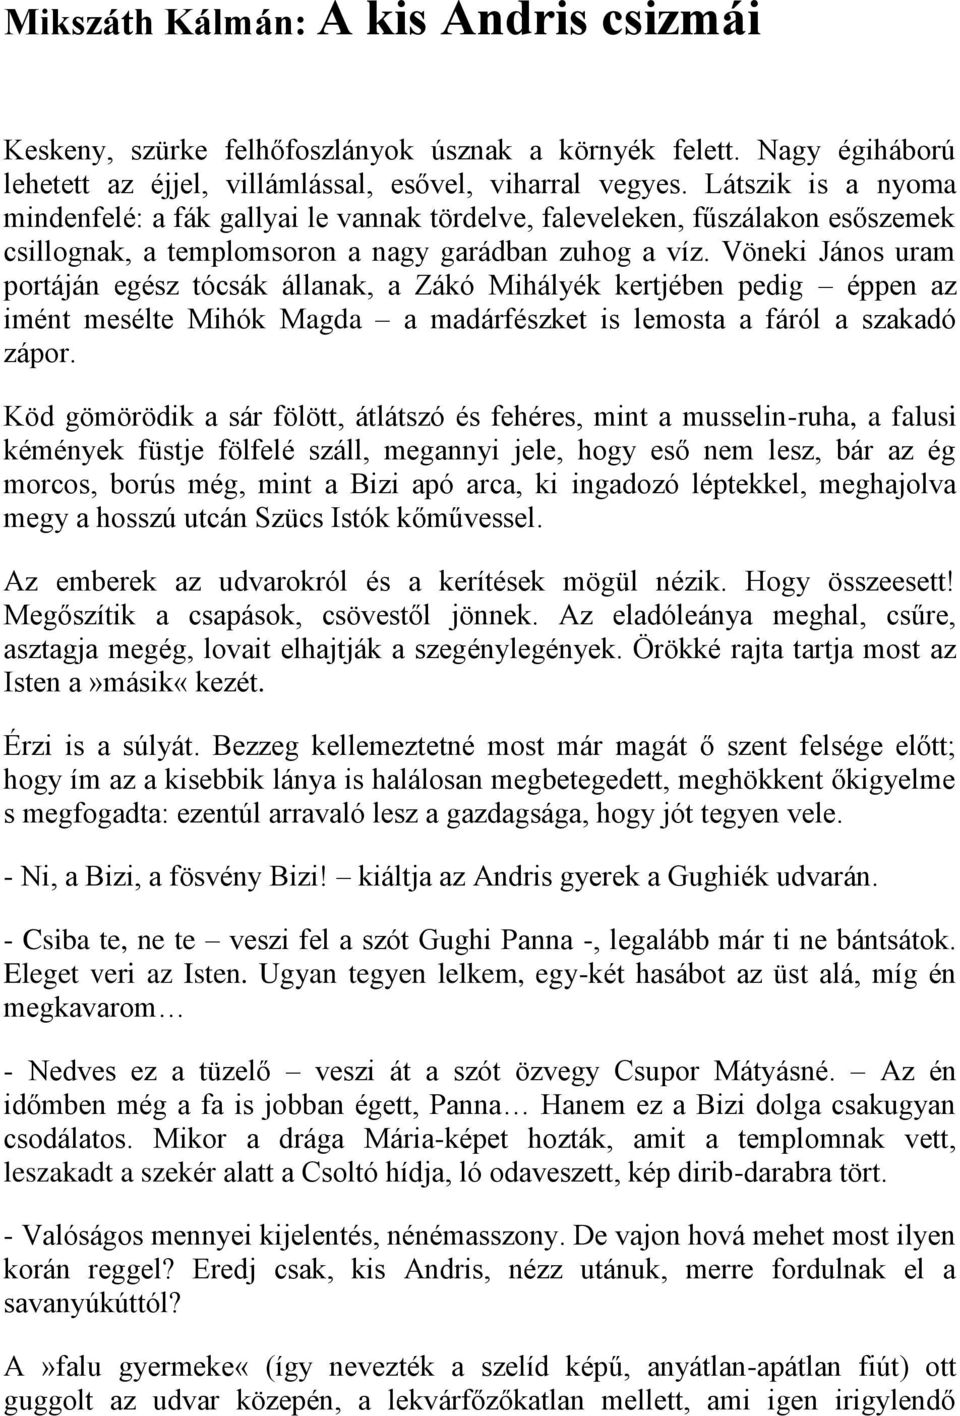 Mikszáth Kálmán: A kis Andris csizmái - PDF Ingyenes letöltés